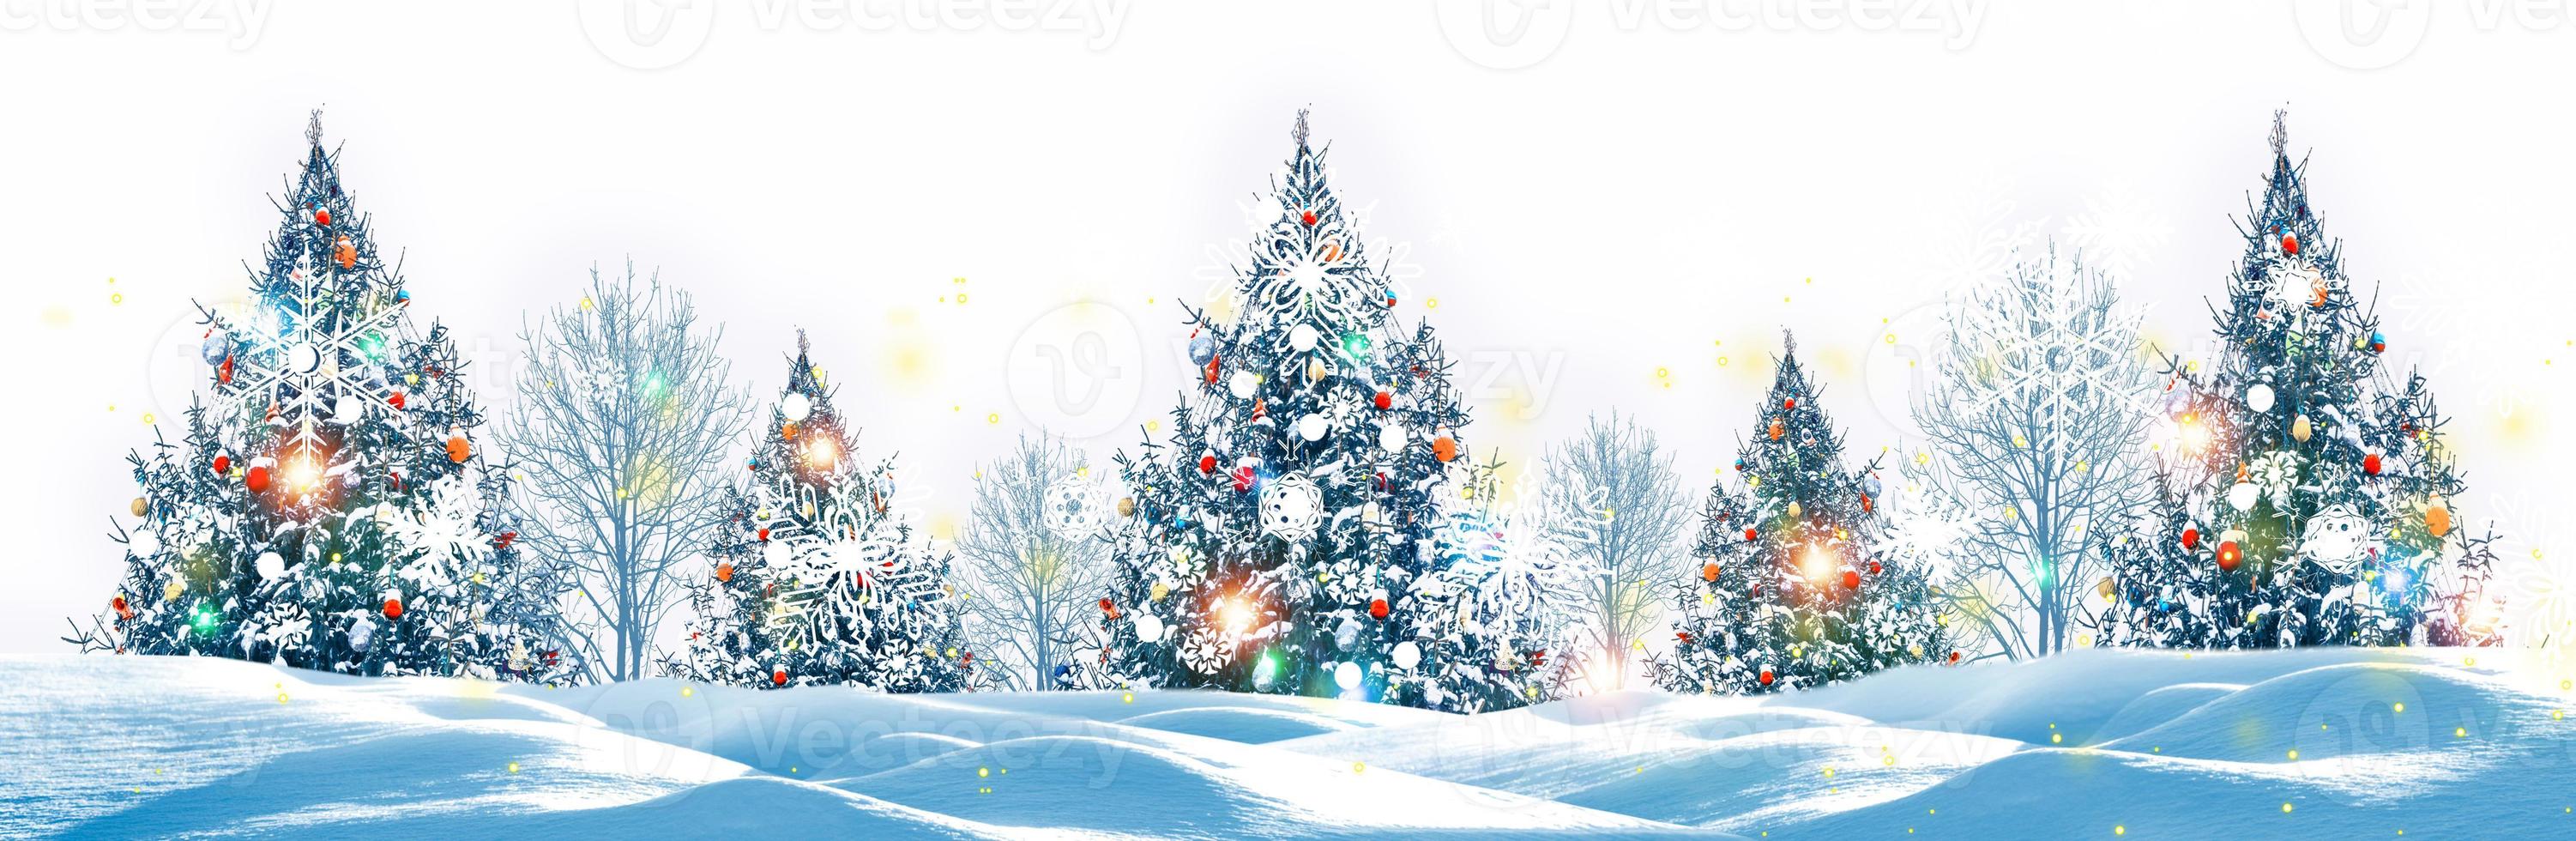 joyeux Noel et bonne année. arbres couverts de neige. photo